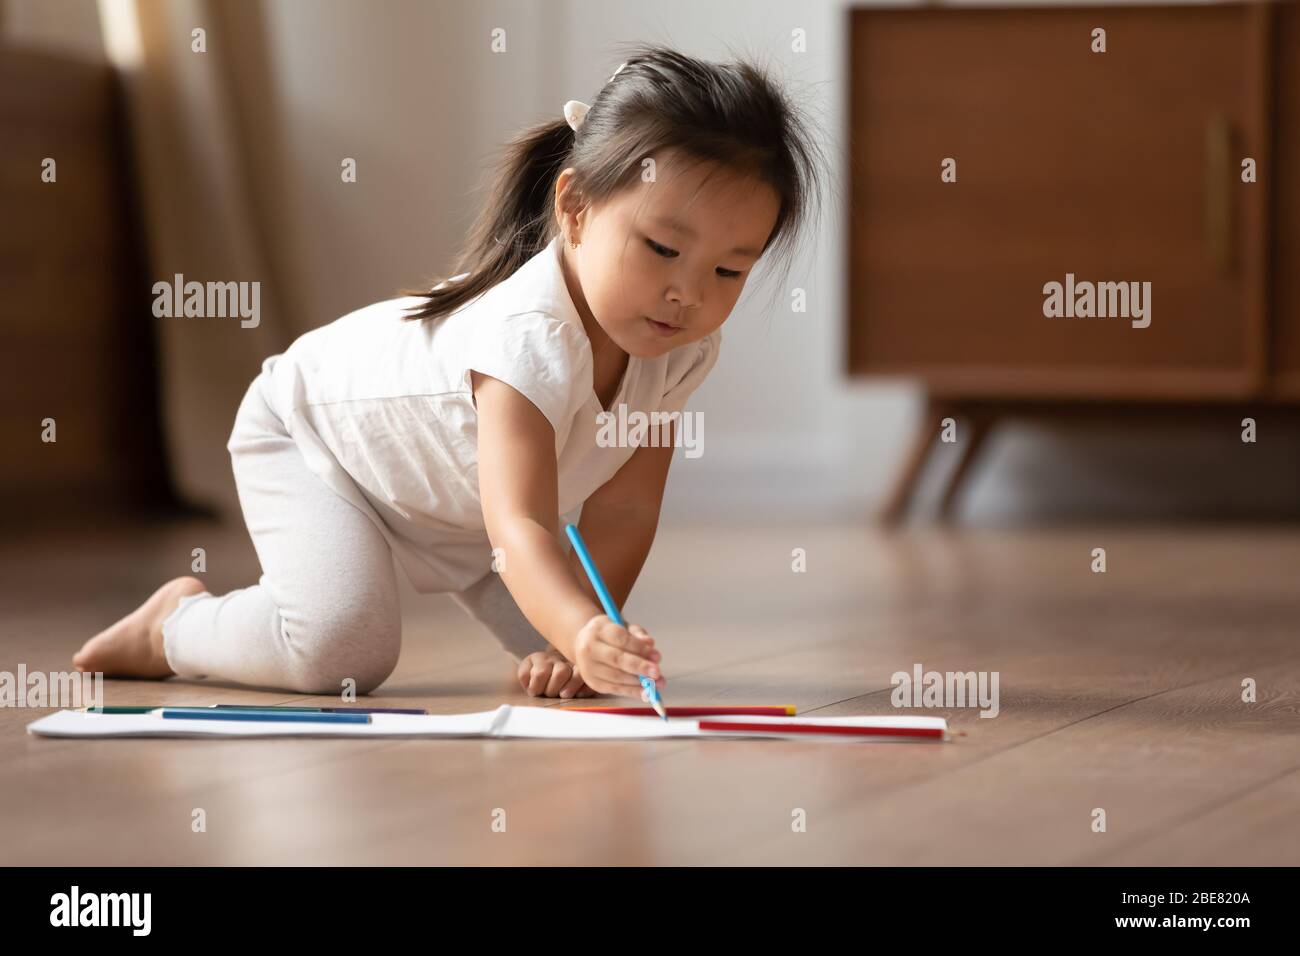 Sur l'étage chaud petite fille asiatique dessin des photos sur album Banque D'Images